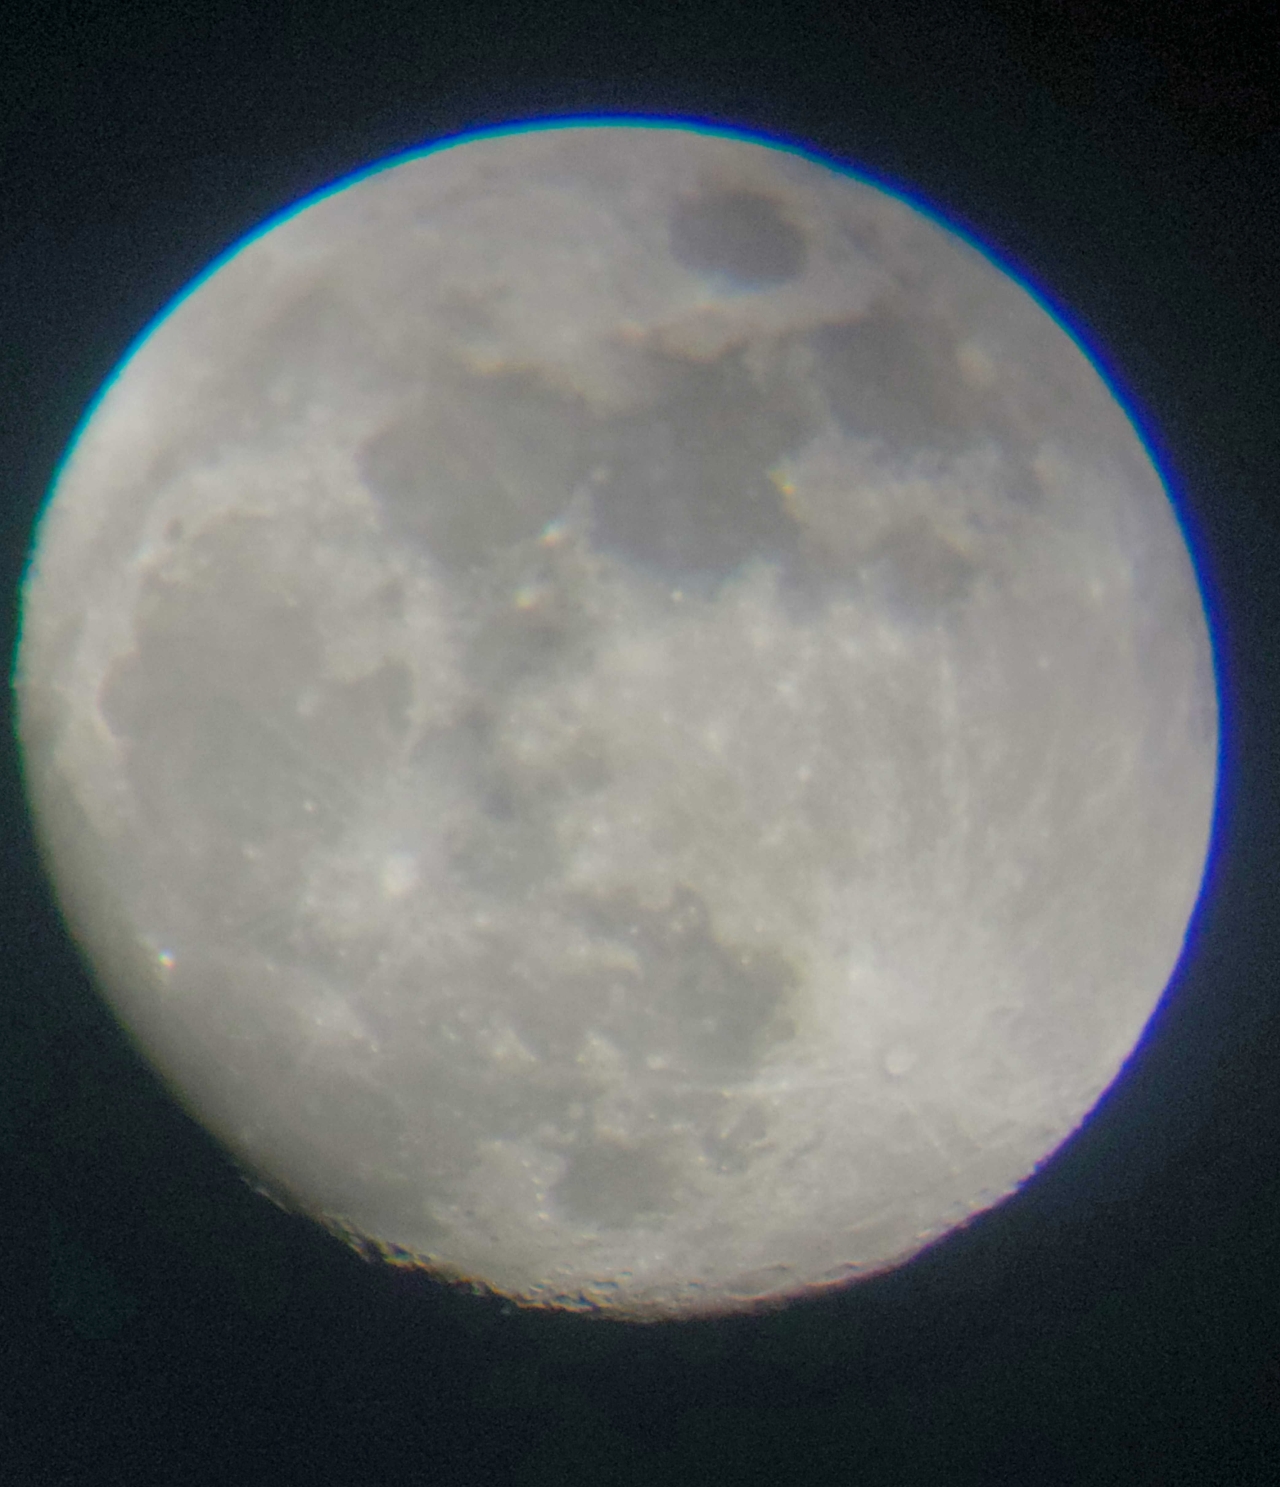 photo of moon as seen through telescope lens